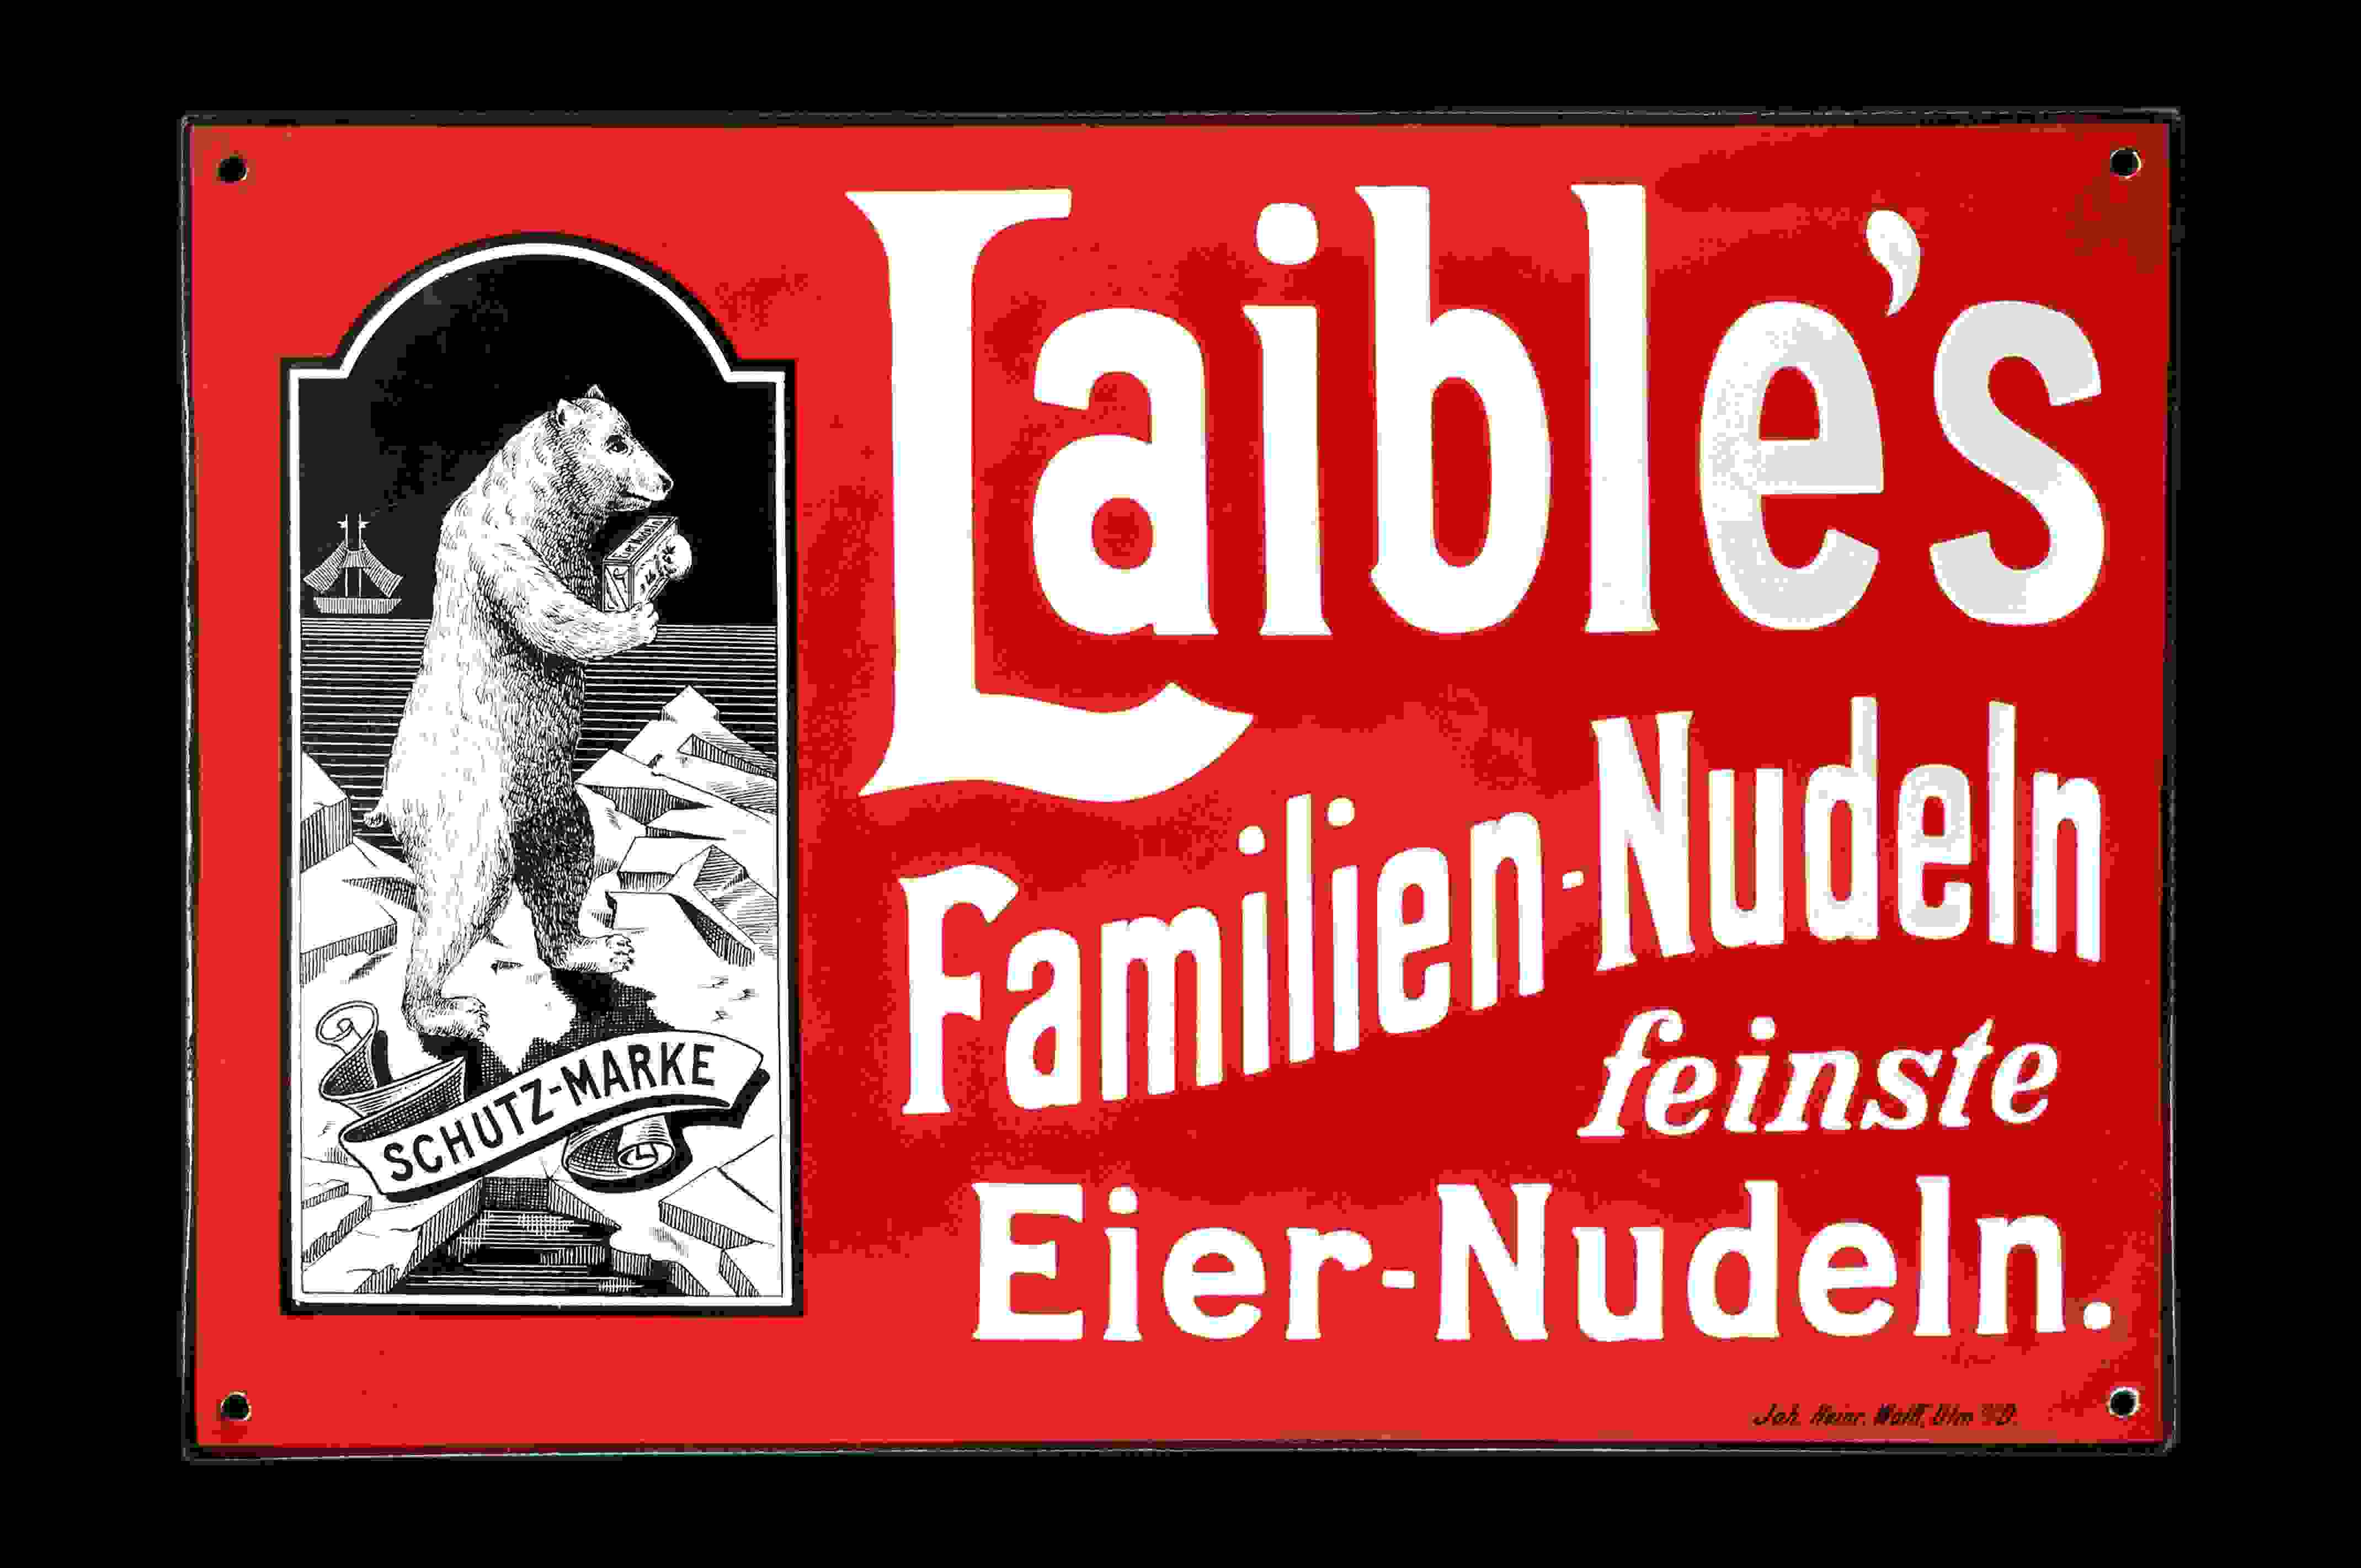 Laible's Familien-Nudeln 